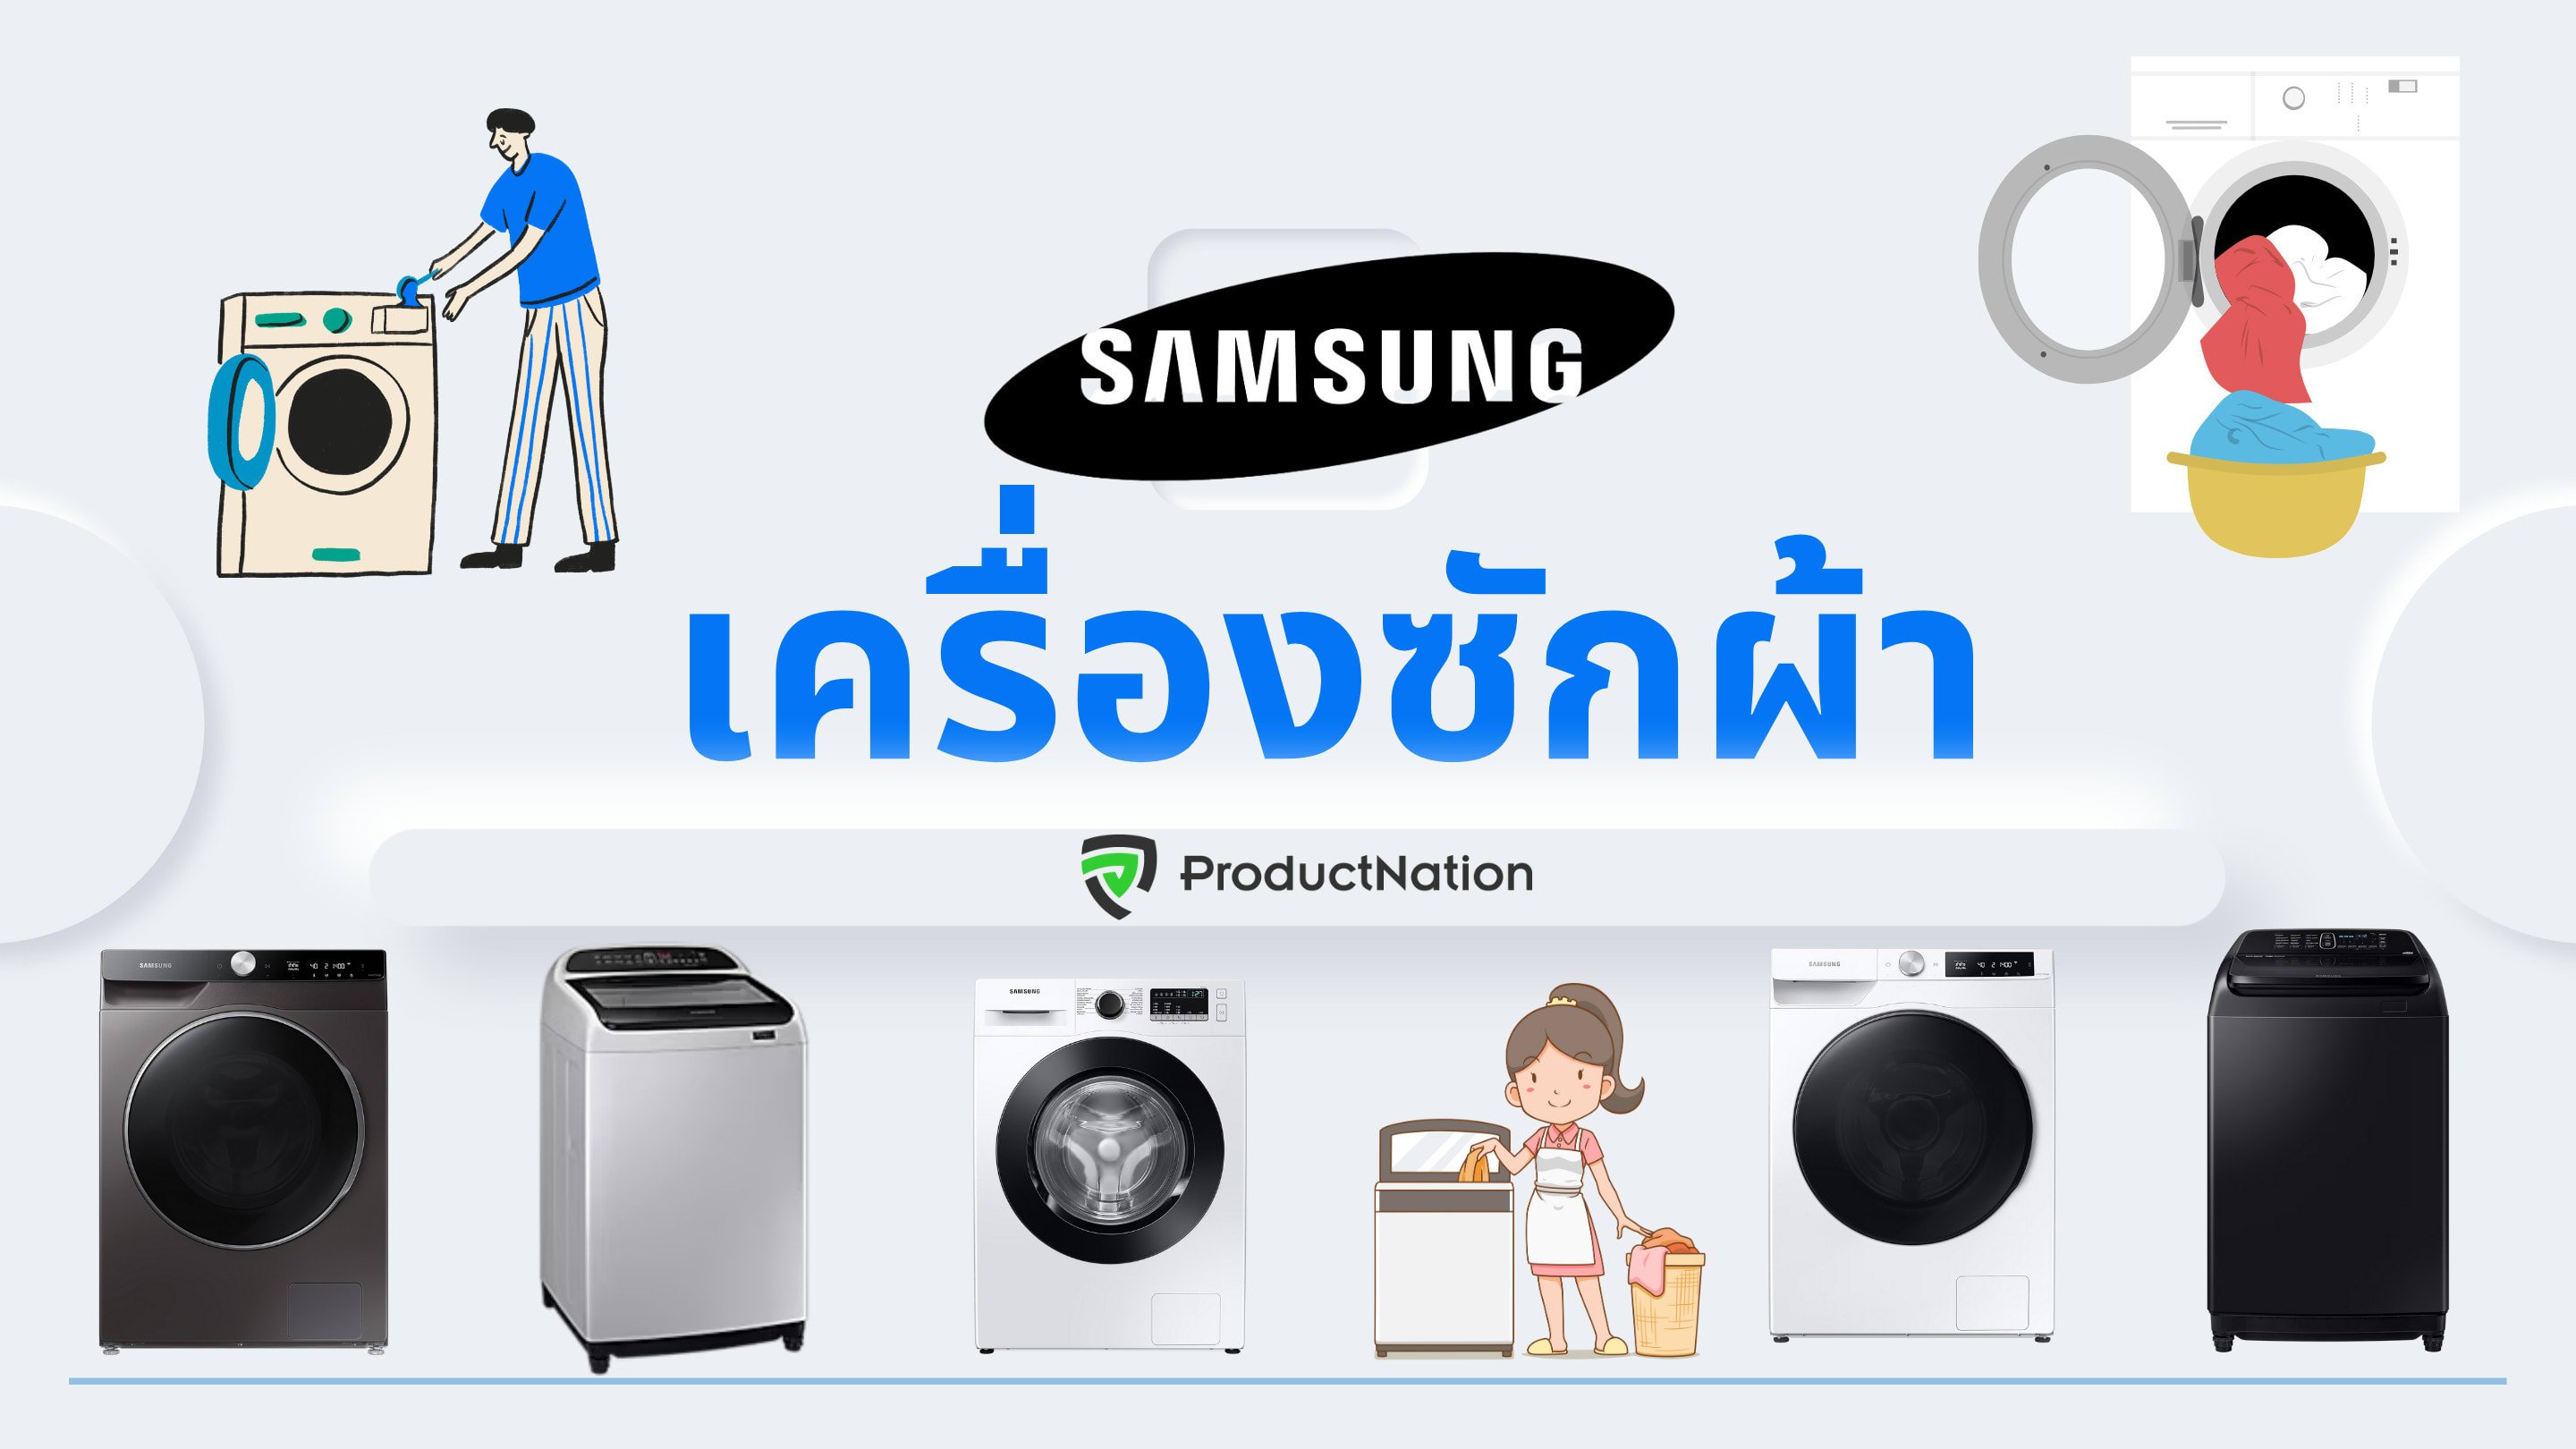 แนะนำ 10 เครื่องซักผ้า Samsung รุ่นไหนดี ซักได้เยอะ สะอาด ขจัดคราบฝังแน่น-ปก